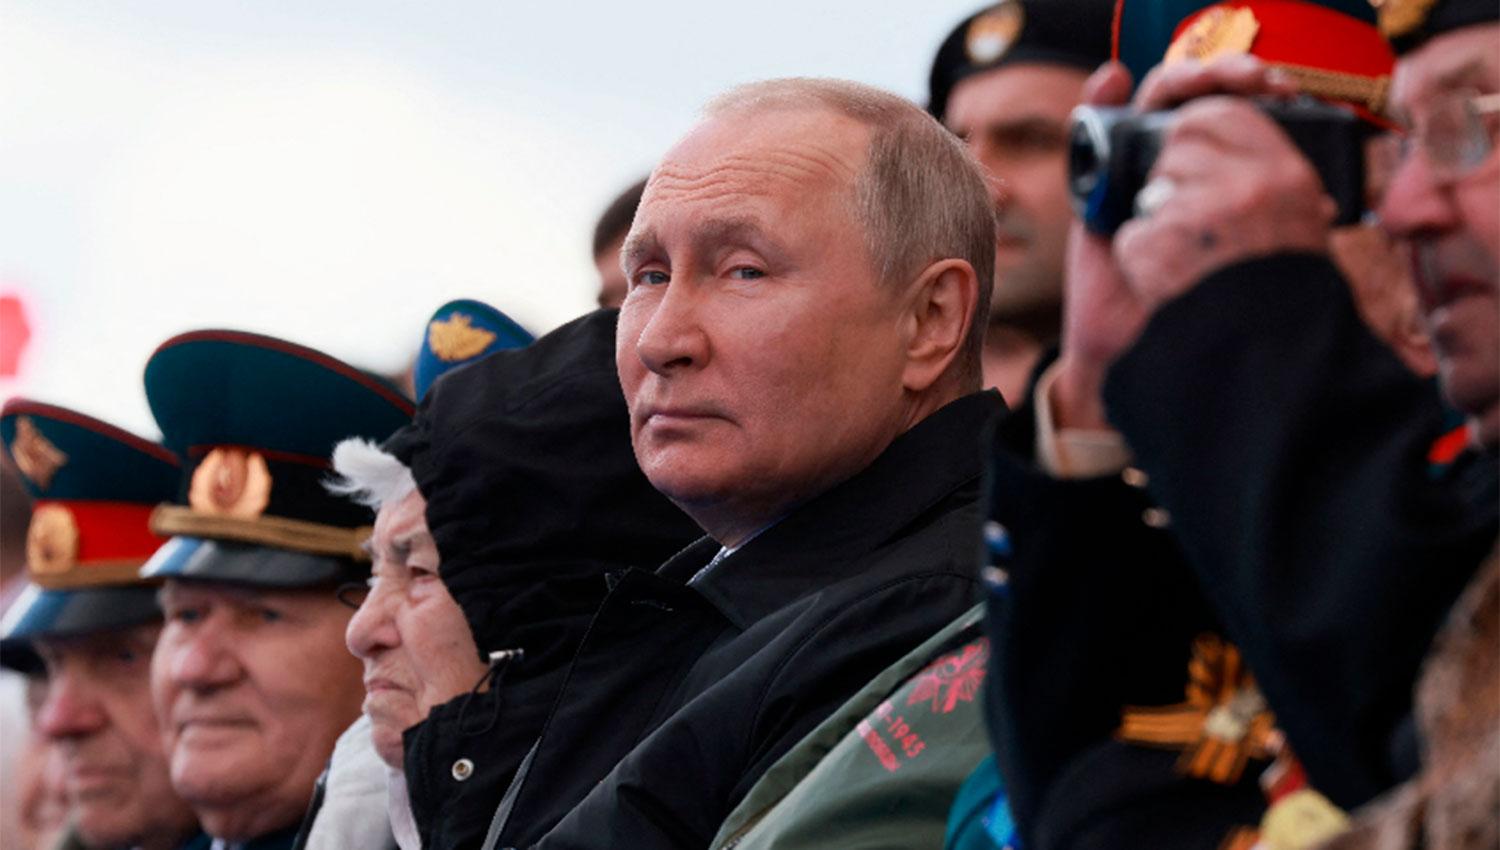 DESFILE: Putin presidió la caravana de militares que recorrió la plaza Roja de Moscú.